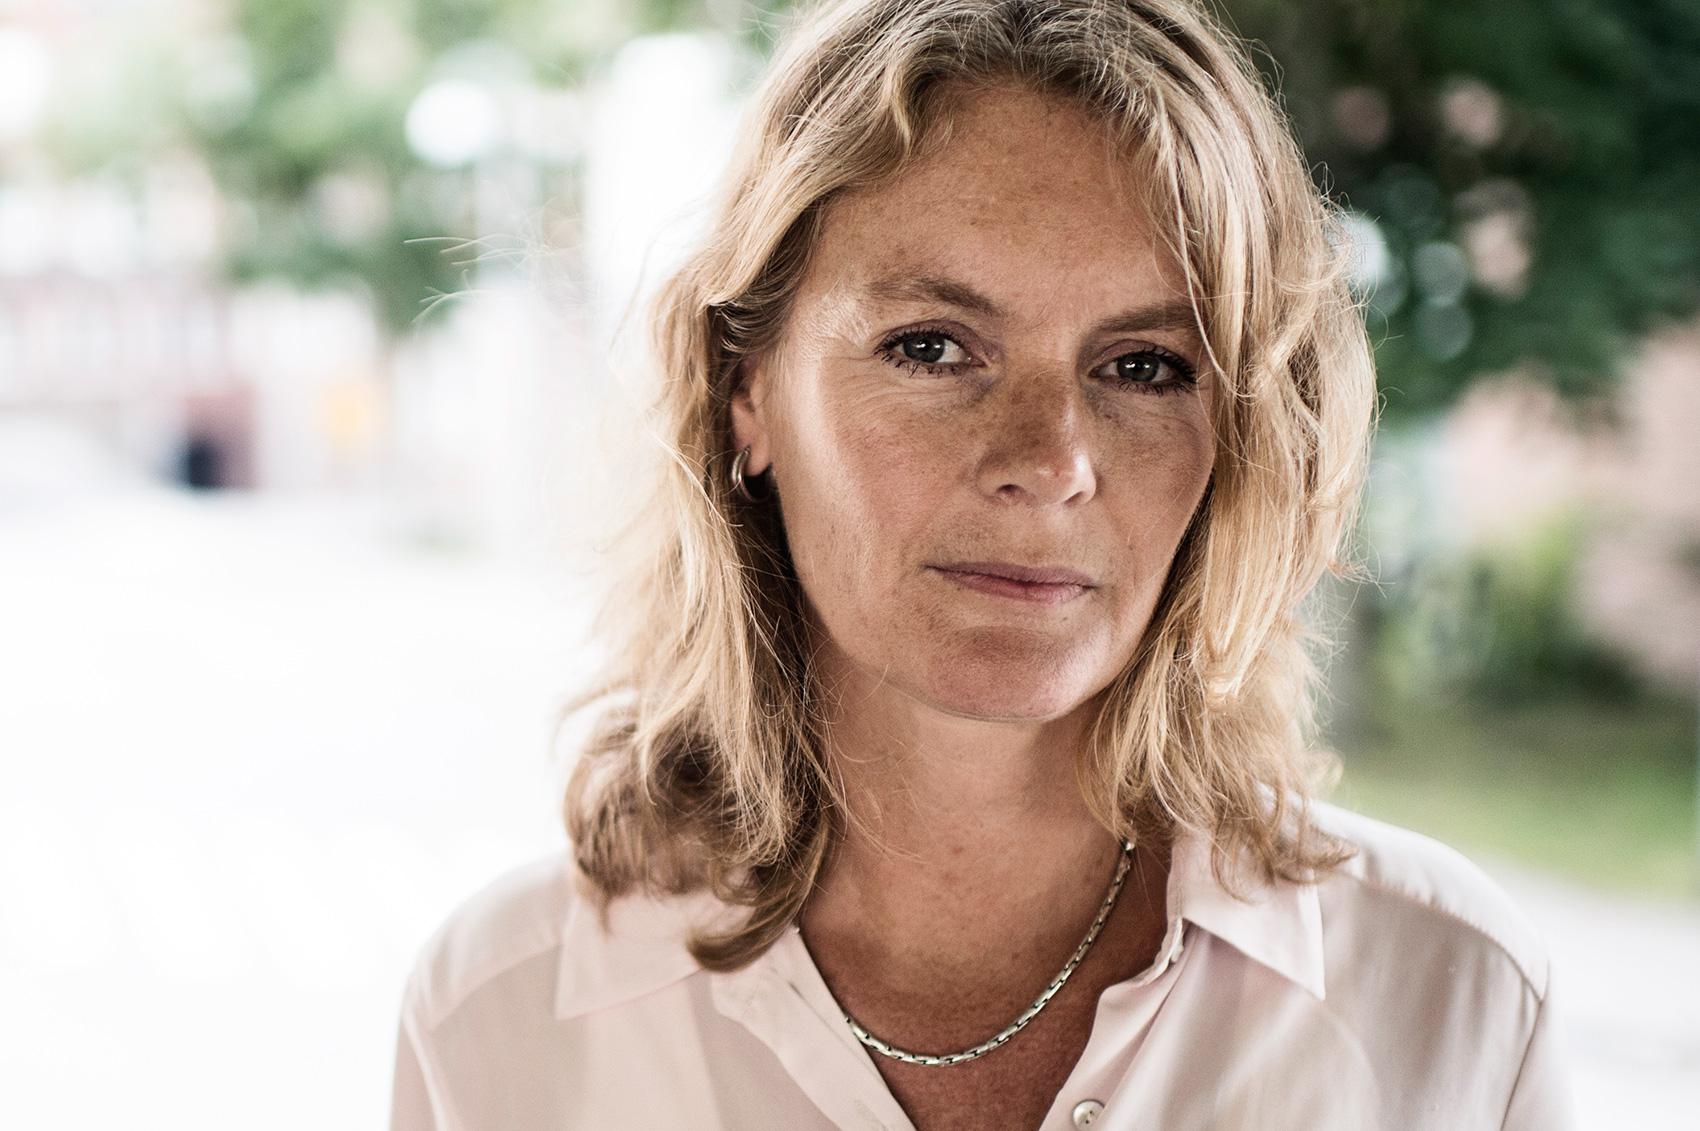 En månad har gått sedan 30-åriga Malin Blom blev påkörd på Södermalm. Nu har hon vaknat ur koman och kan kommunicera med familjen. ”Vi jublade och grät när hon sa ’hej’ första gången”, säger hennes mamma Jenny.